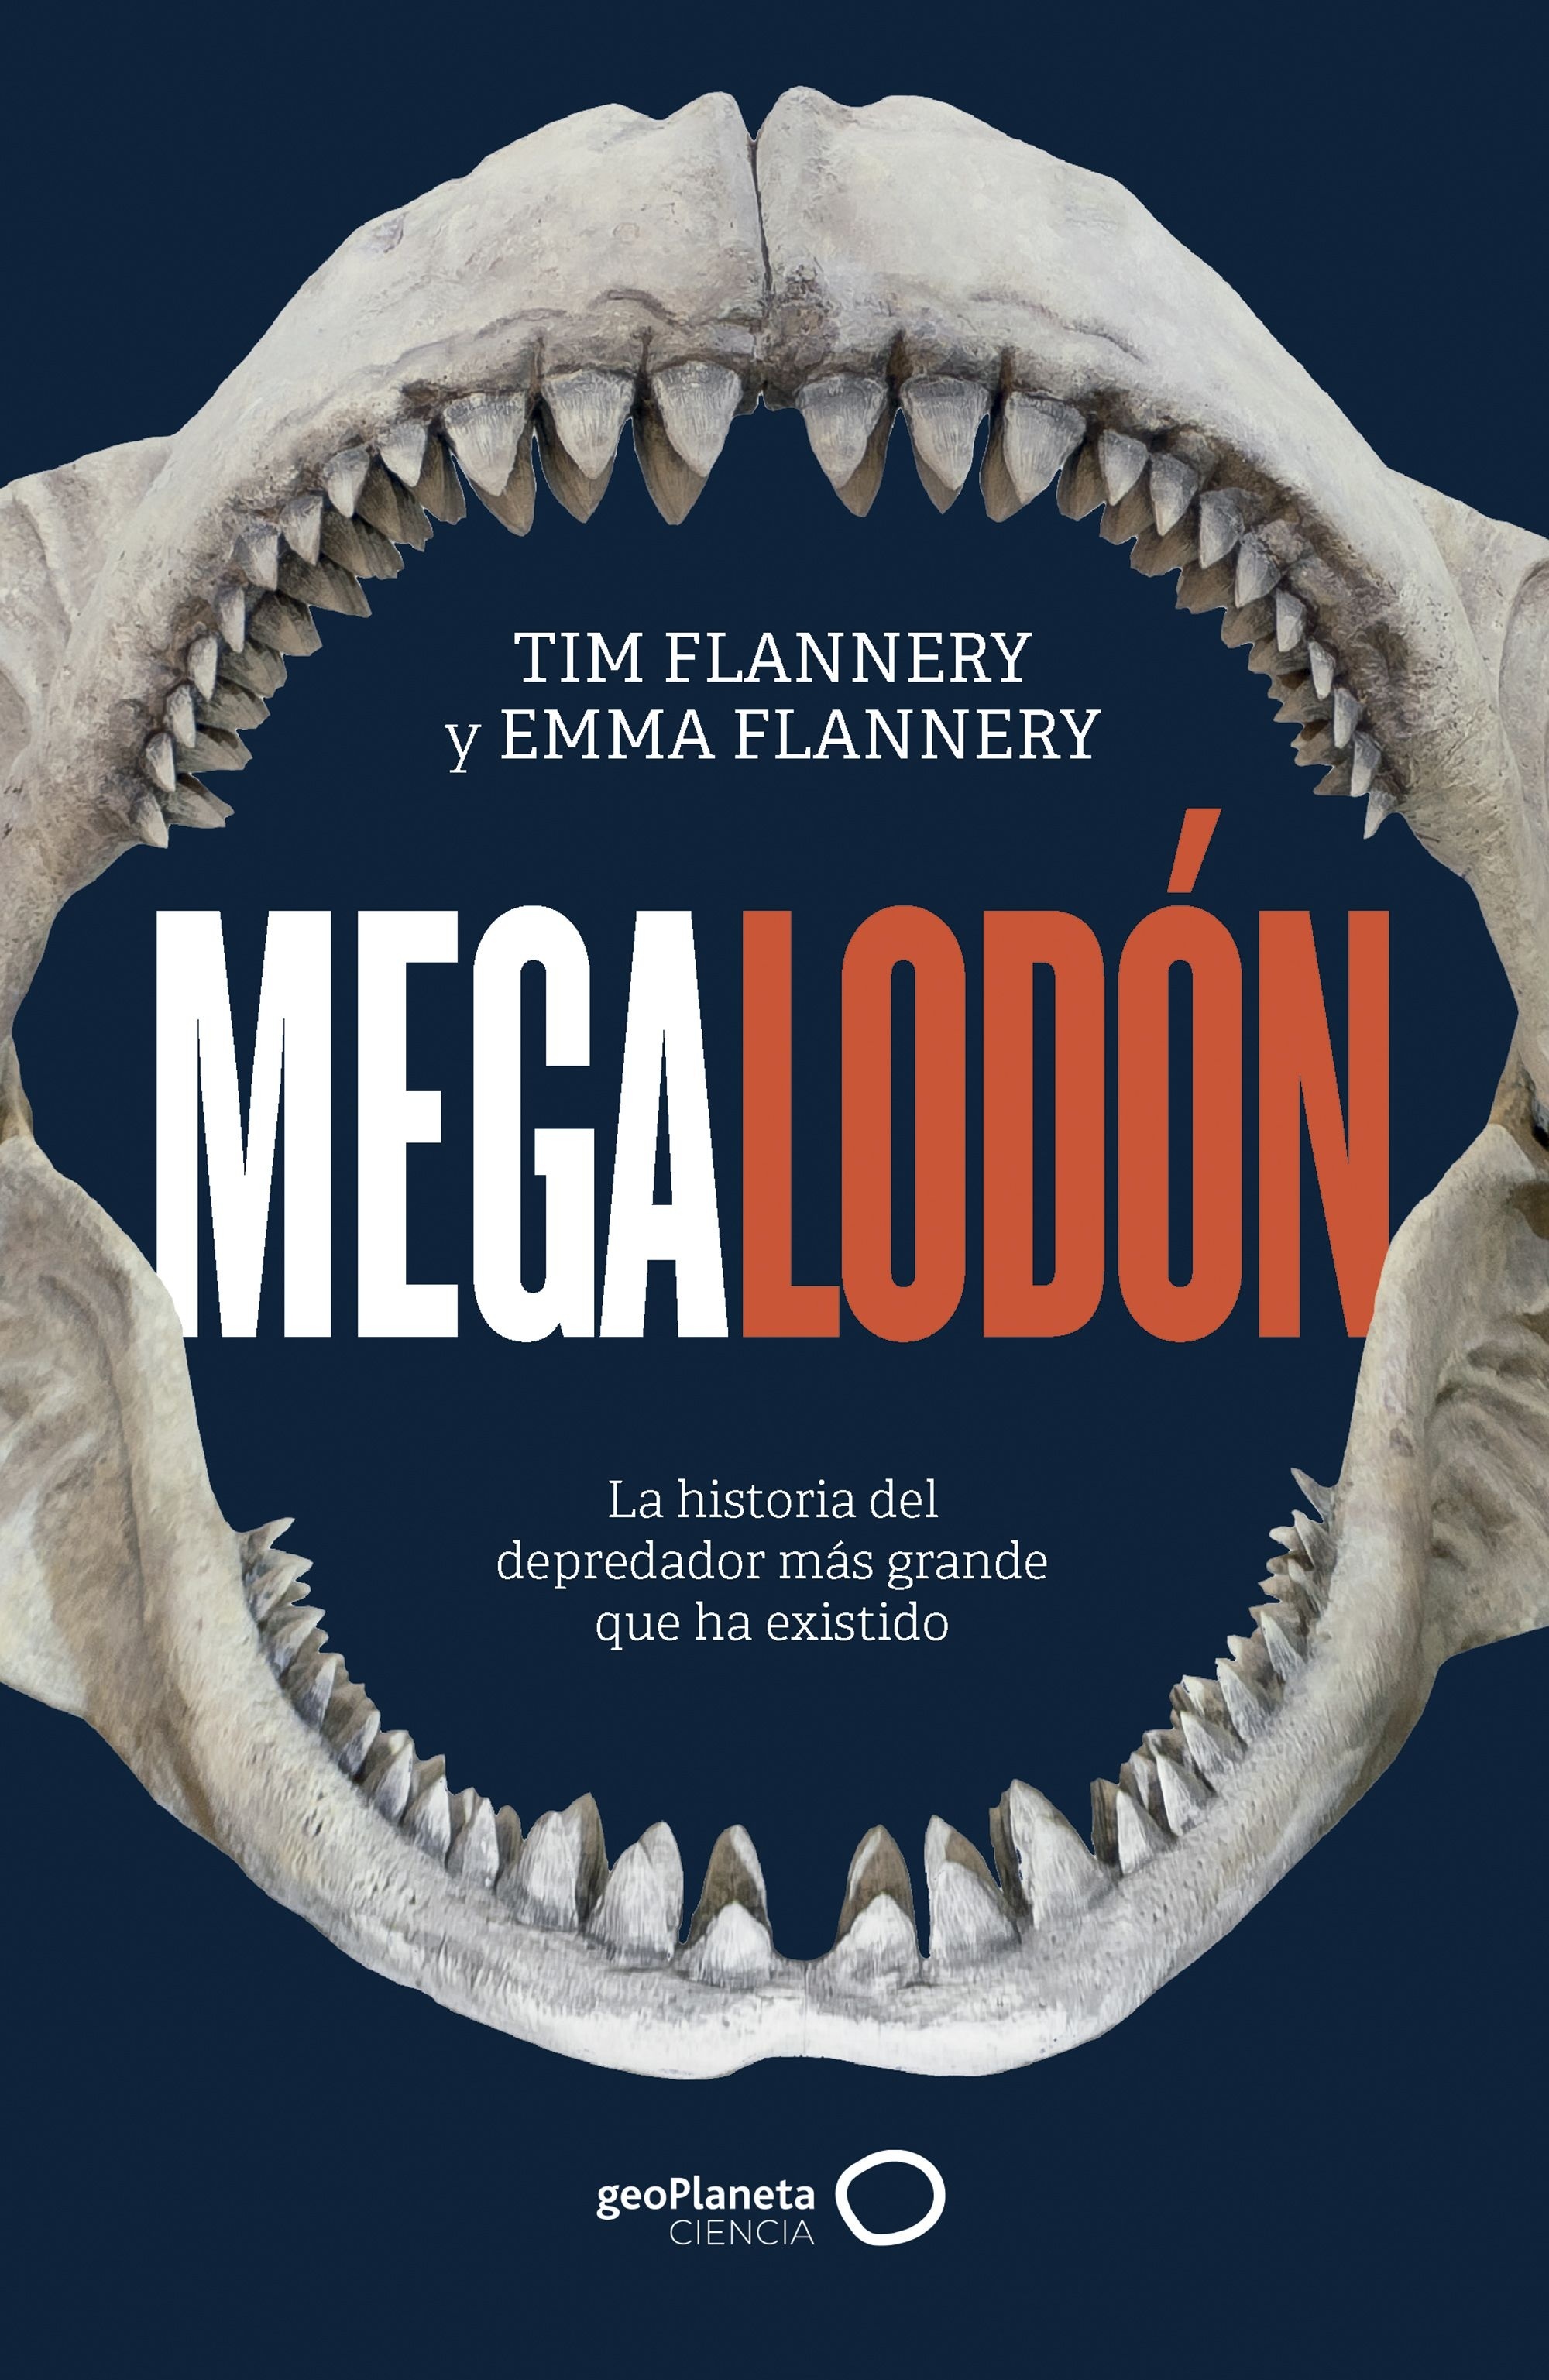 Megalodón "La historia del depredador más grande que ha existido"